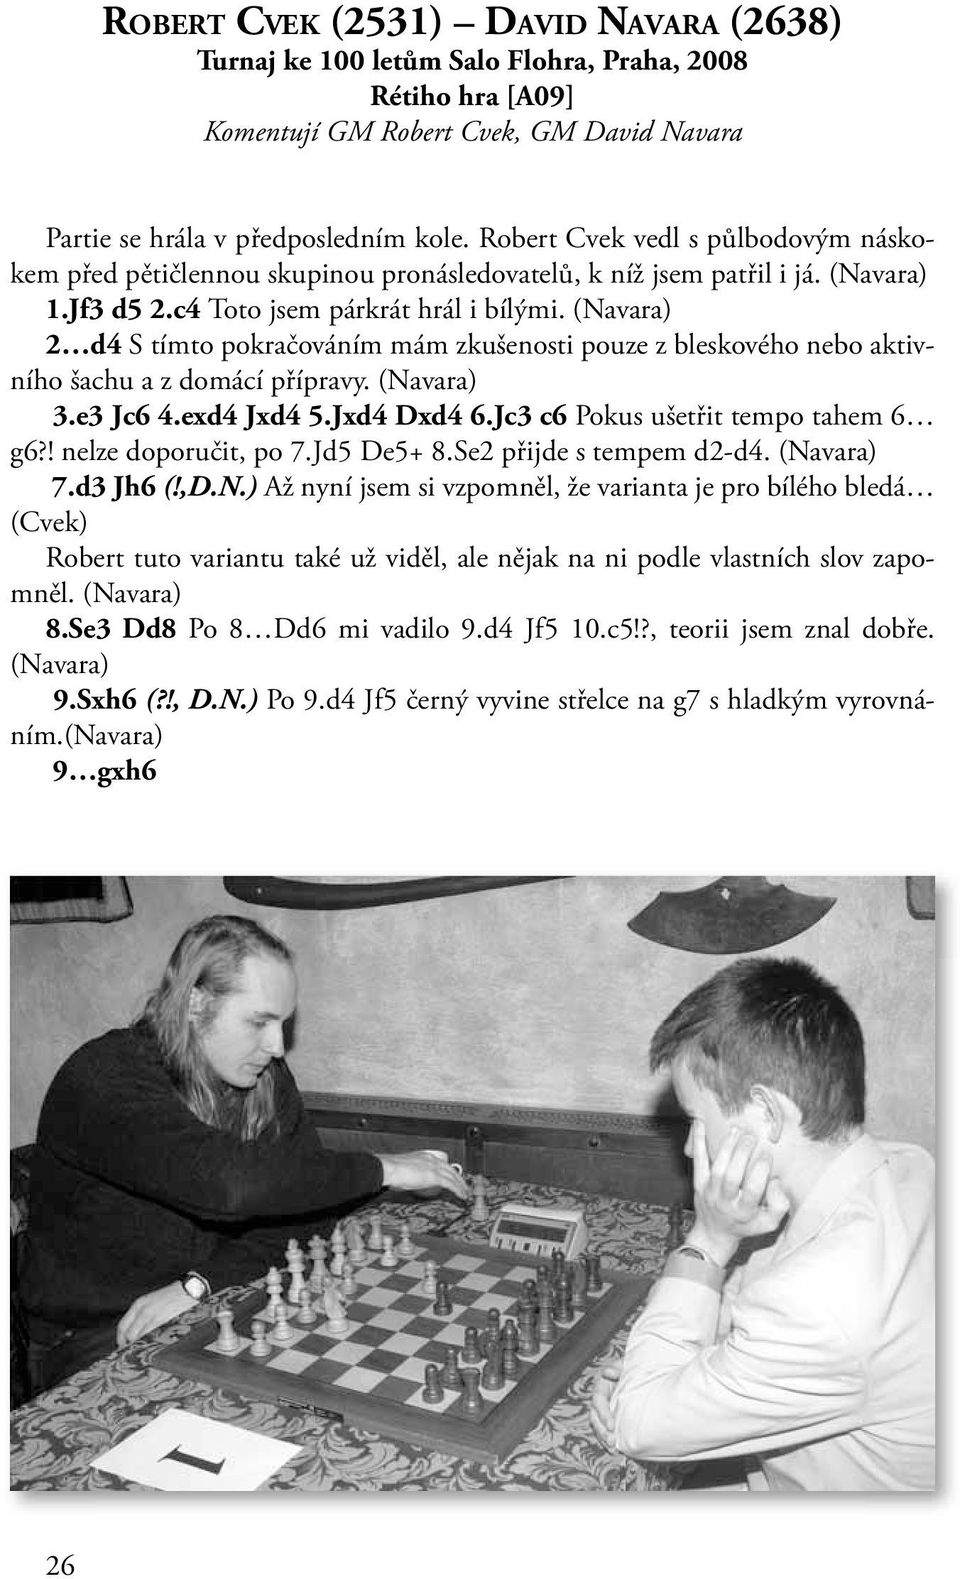 2 d4 S tímto pokračováním mám zkušenosti pouze z bleskového nebo aktivního šachu a z domácí přípravy. 3.e3 Jc6 4.exd4 Jxd4 5.Jxd4 Dxd4 6.Jc3 c6 Pokus ušetřit tempo tahem 6 g6?! nelze doporučit, po 7.